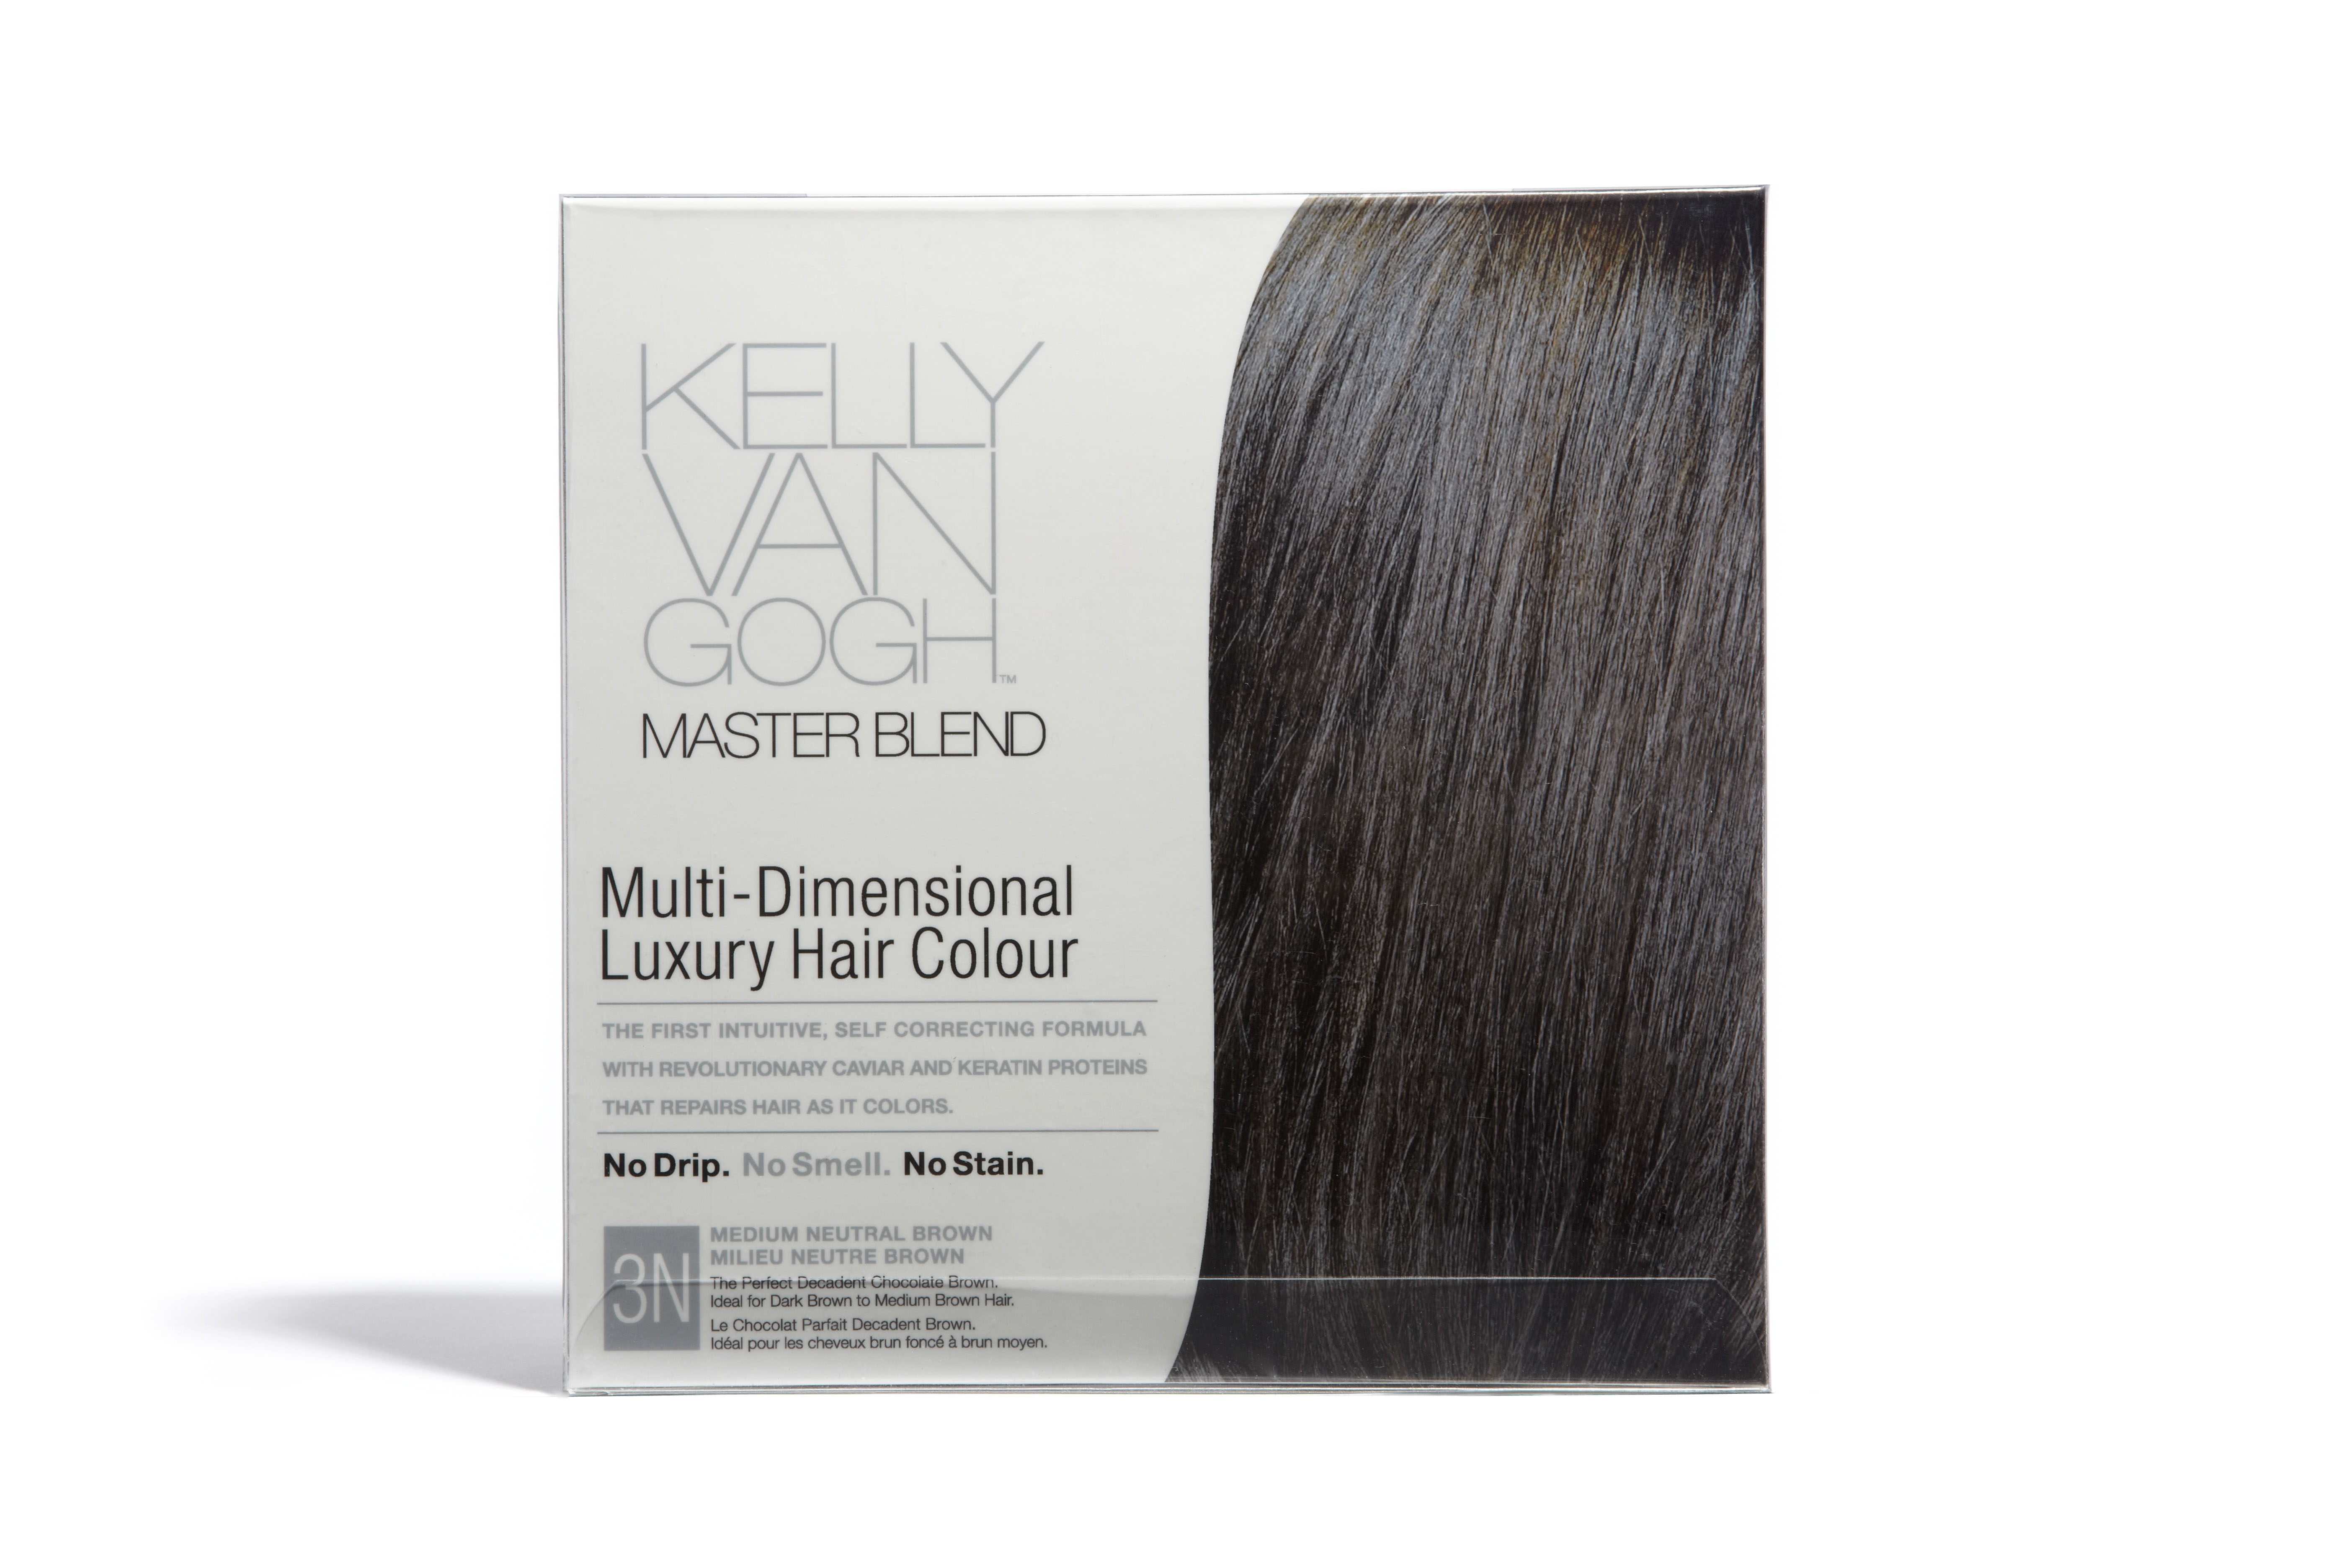 Kelly Van Gogh Master Blend Multi-Dimensional Luxury Hair Color